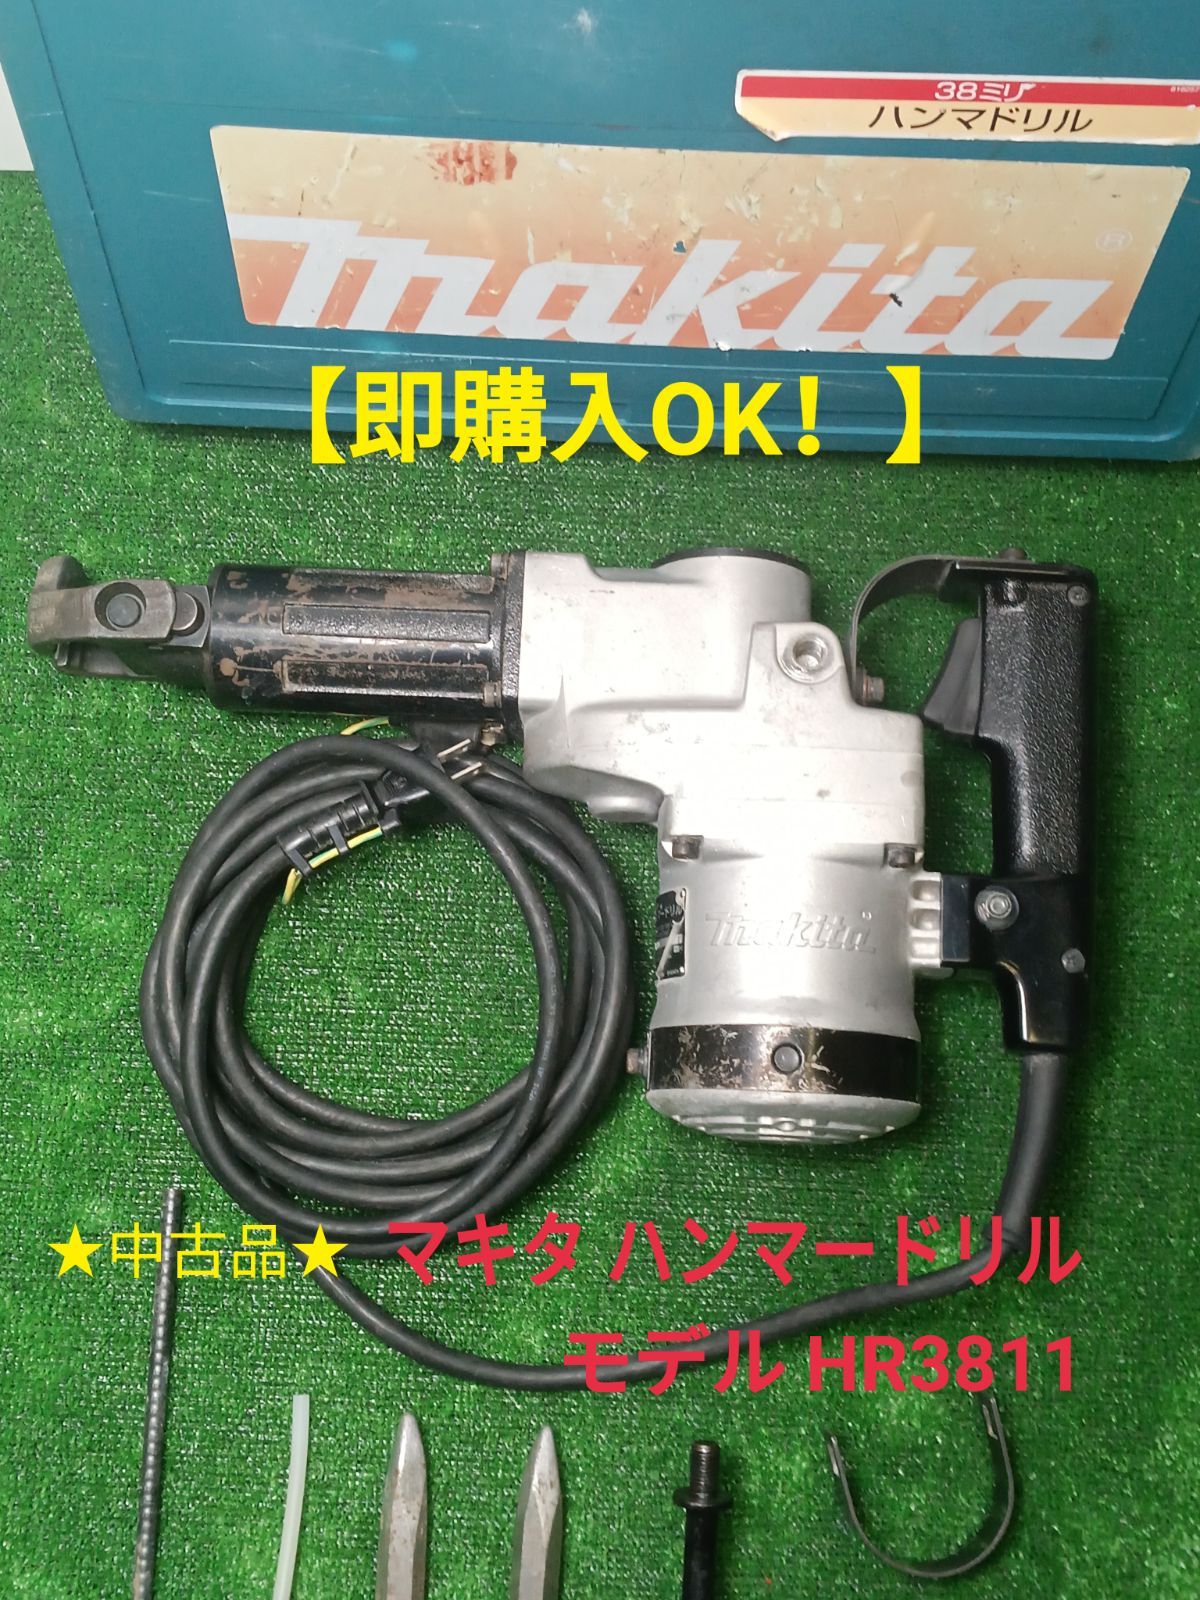 マキタ makita 38㎜ハンマードリル モデル HR3811 - メルカリ